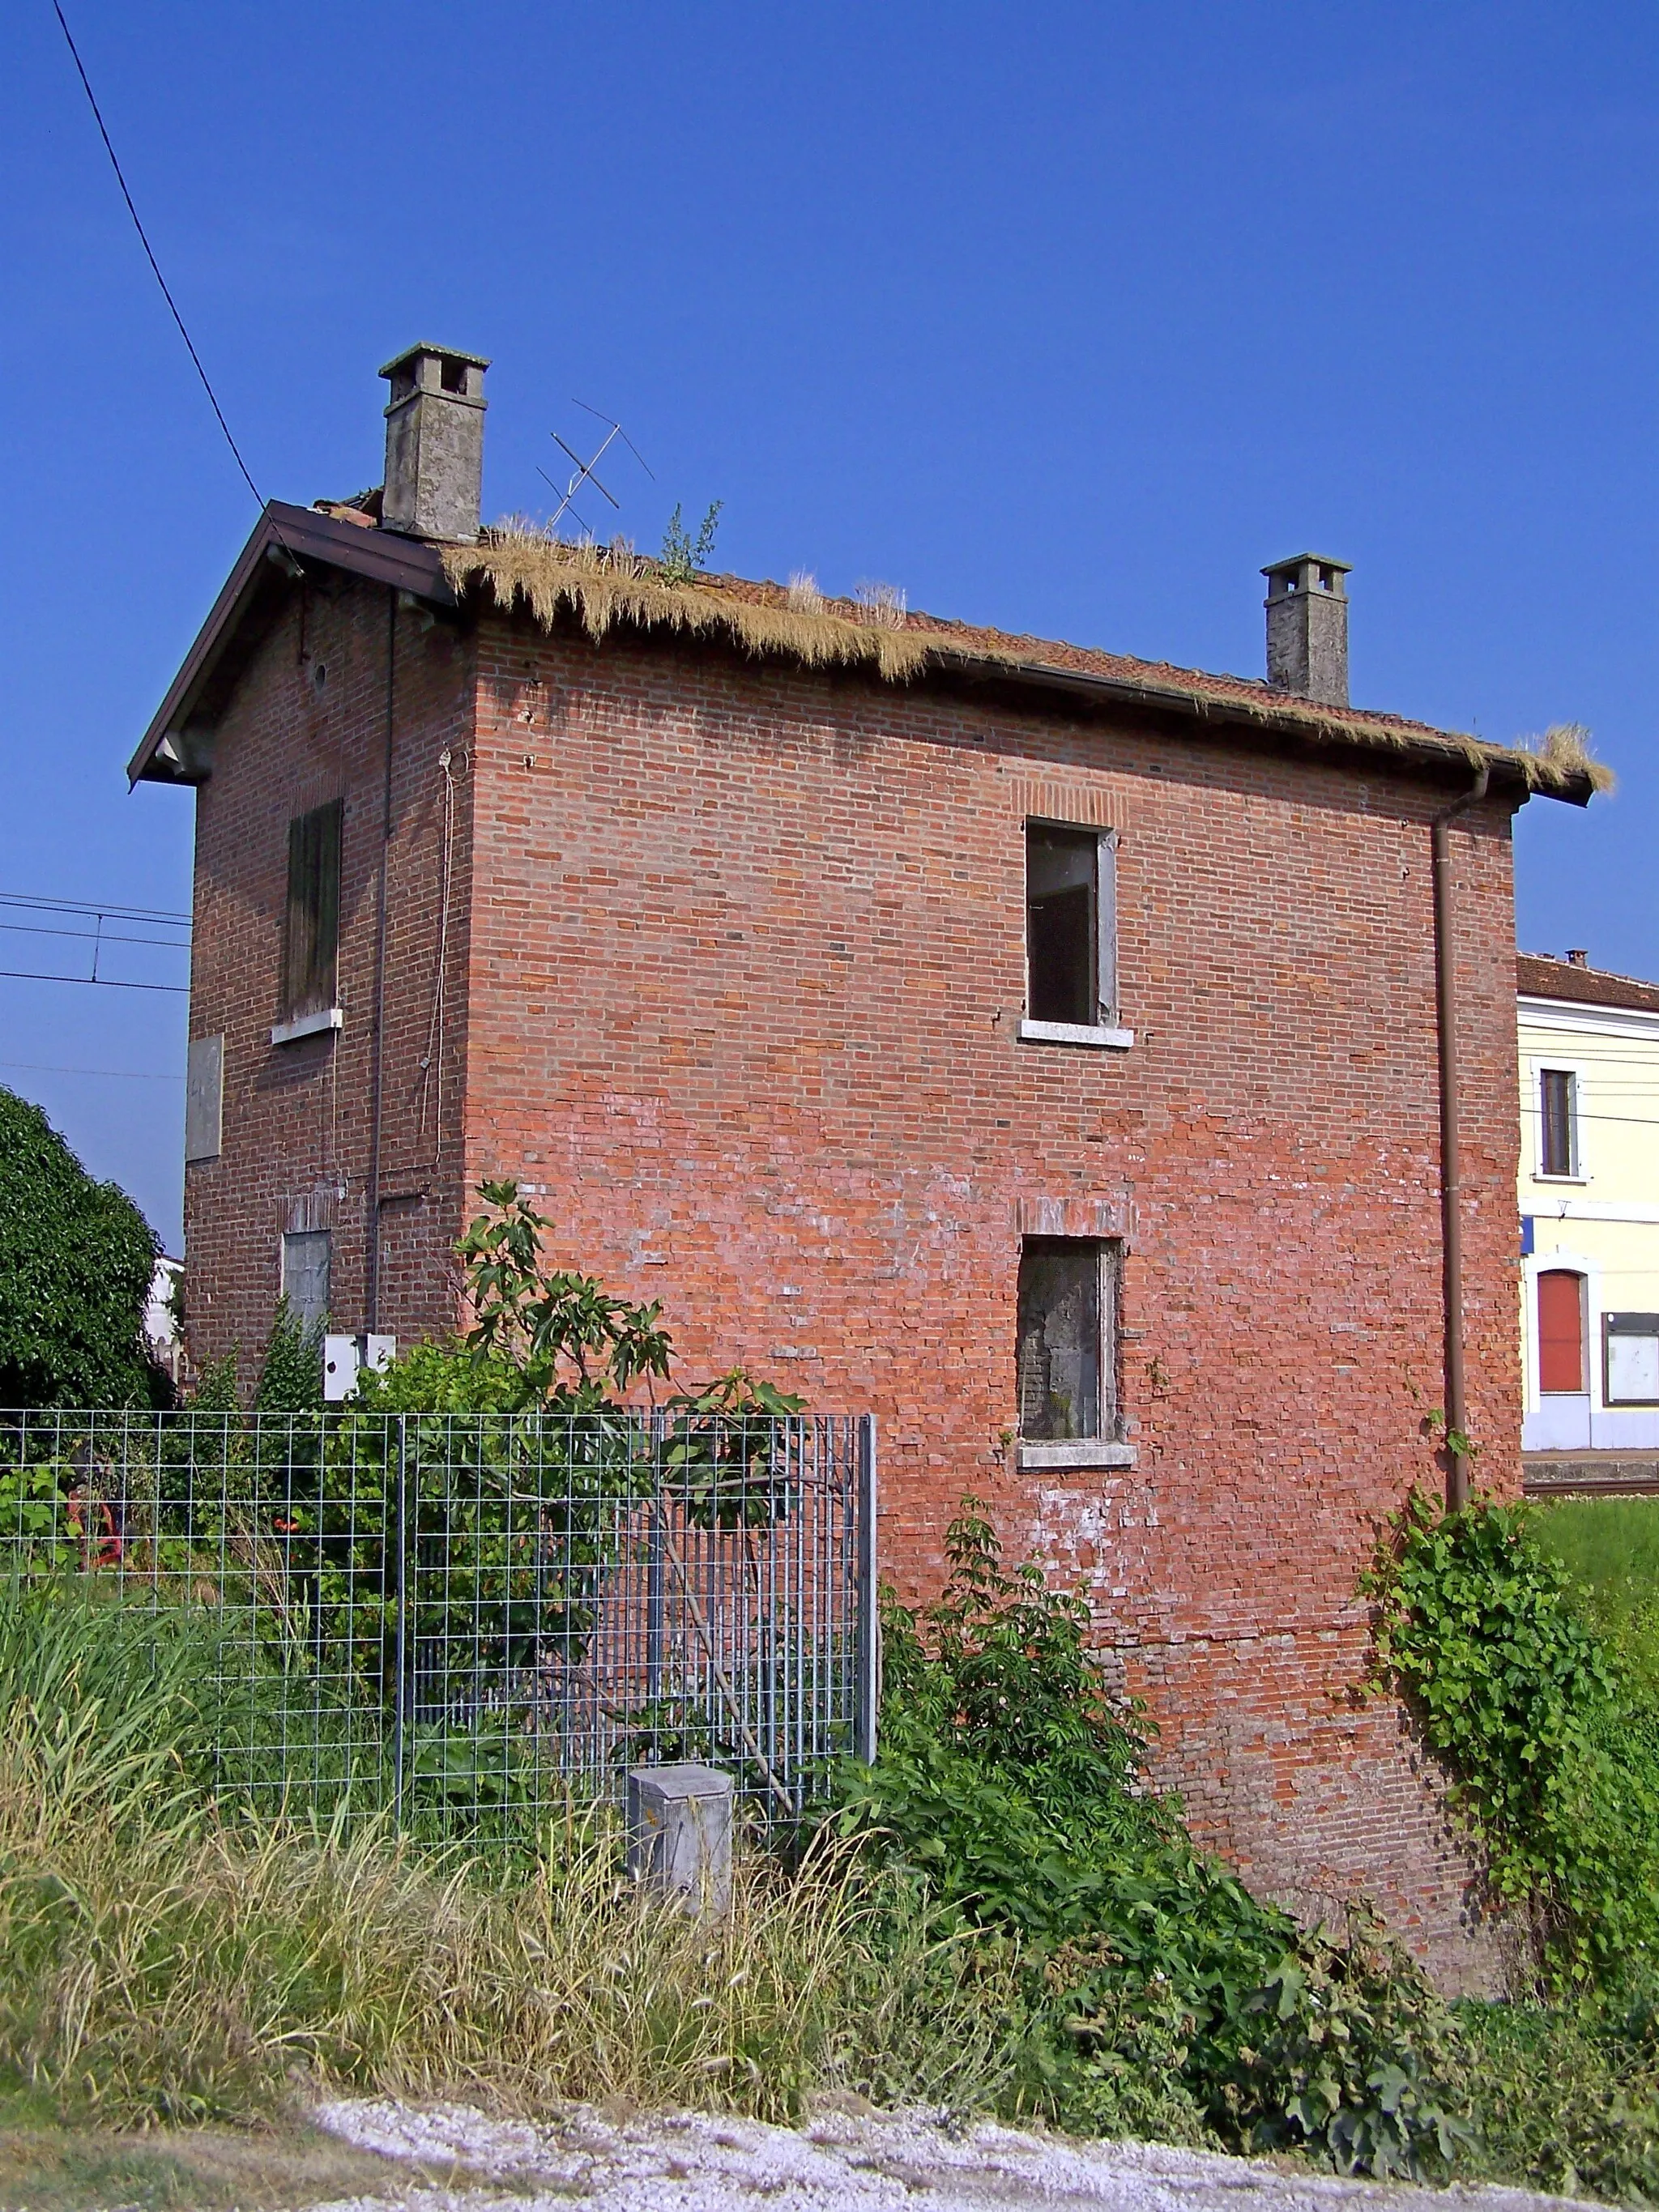 Photo showing: Borgoforte. Resti del casello 48+267 della ferrovia Verona-Modena.